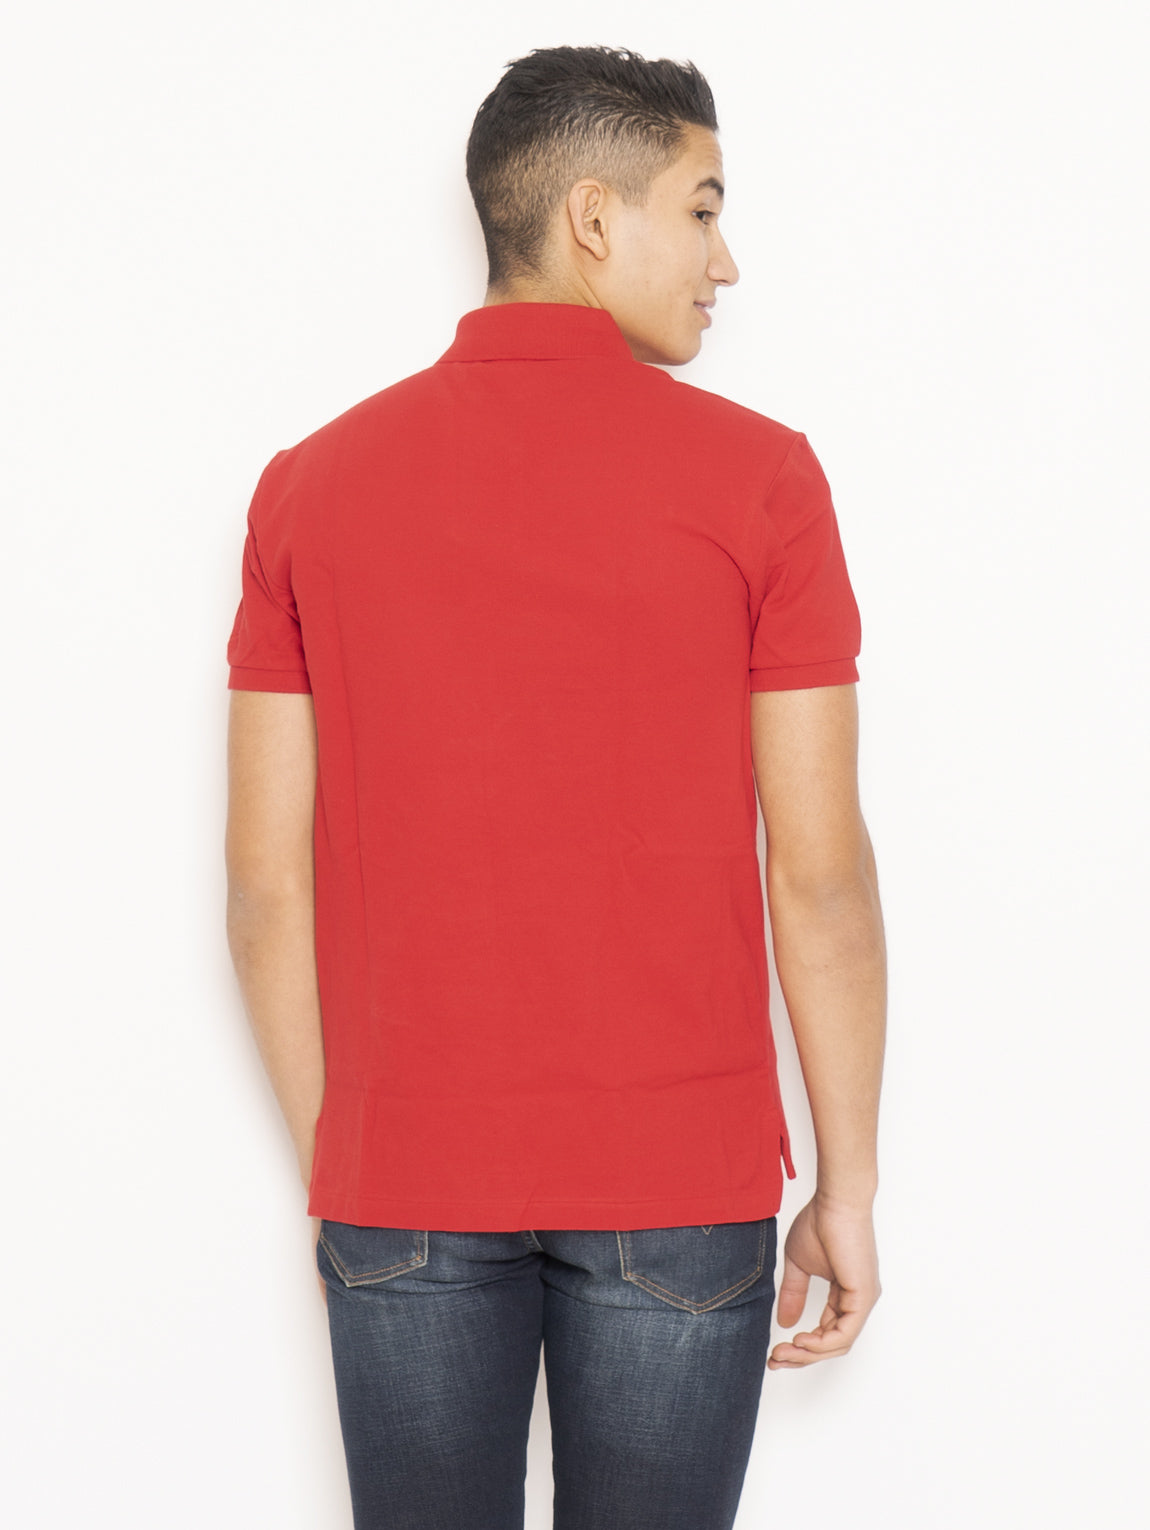 Poloshirt aus Baumwoll-Piqué in schmaler Passform in Rot